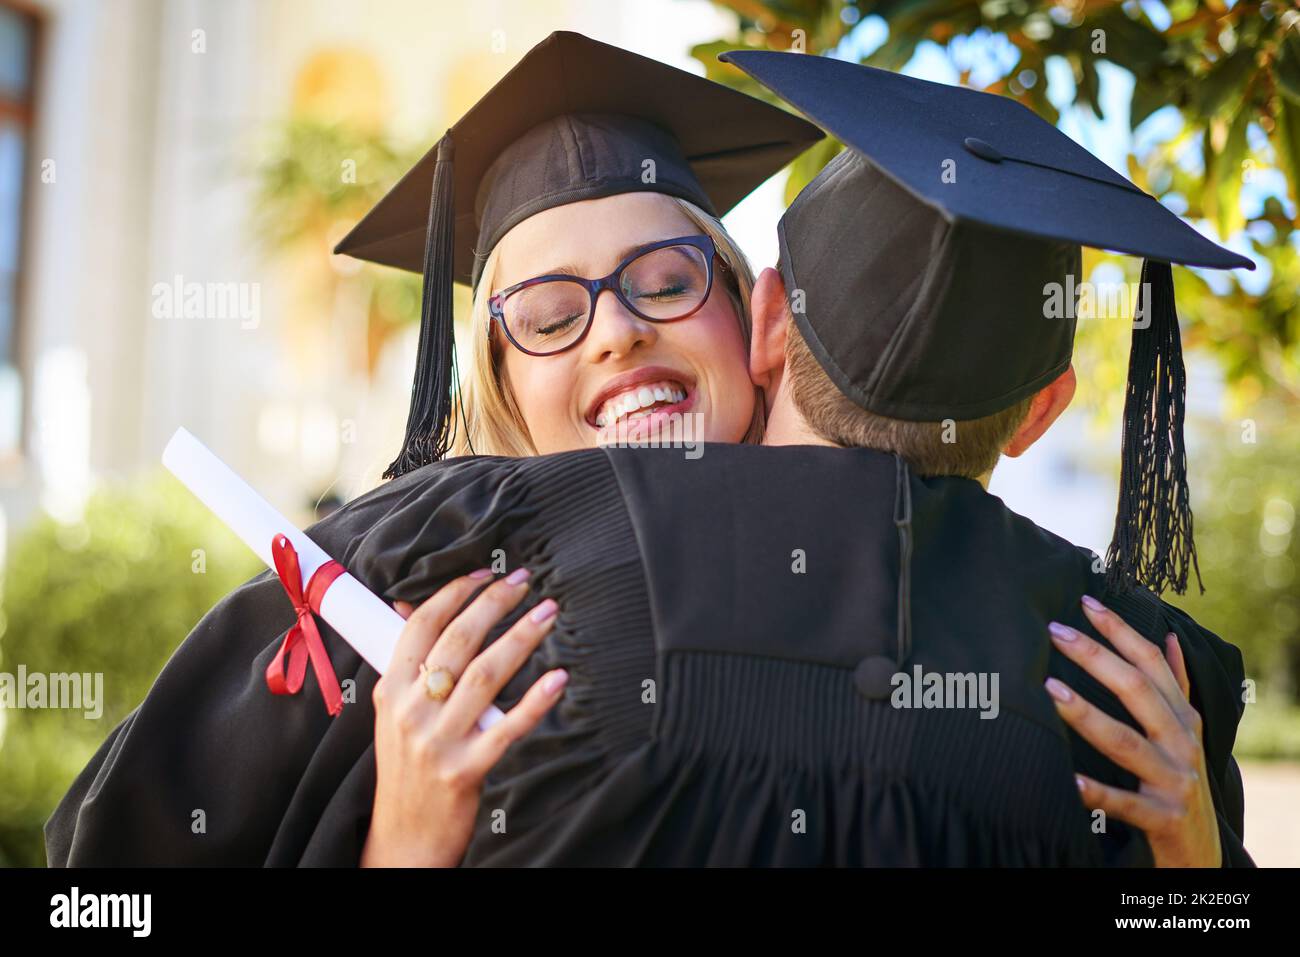 Wir feiern unsere große Leistung. Aufnahme eines jungen Paares, das sich am Abschlusstag umarmt. Stockfoto